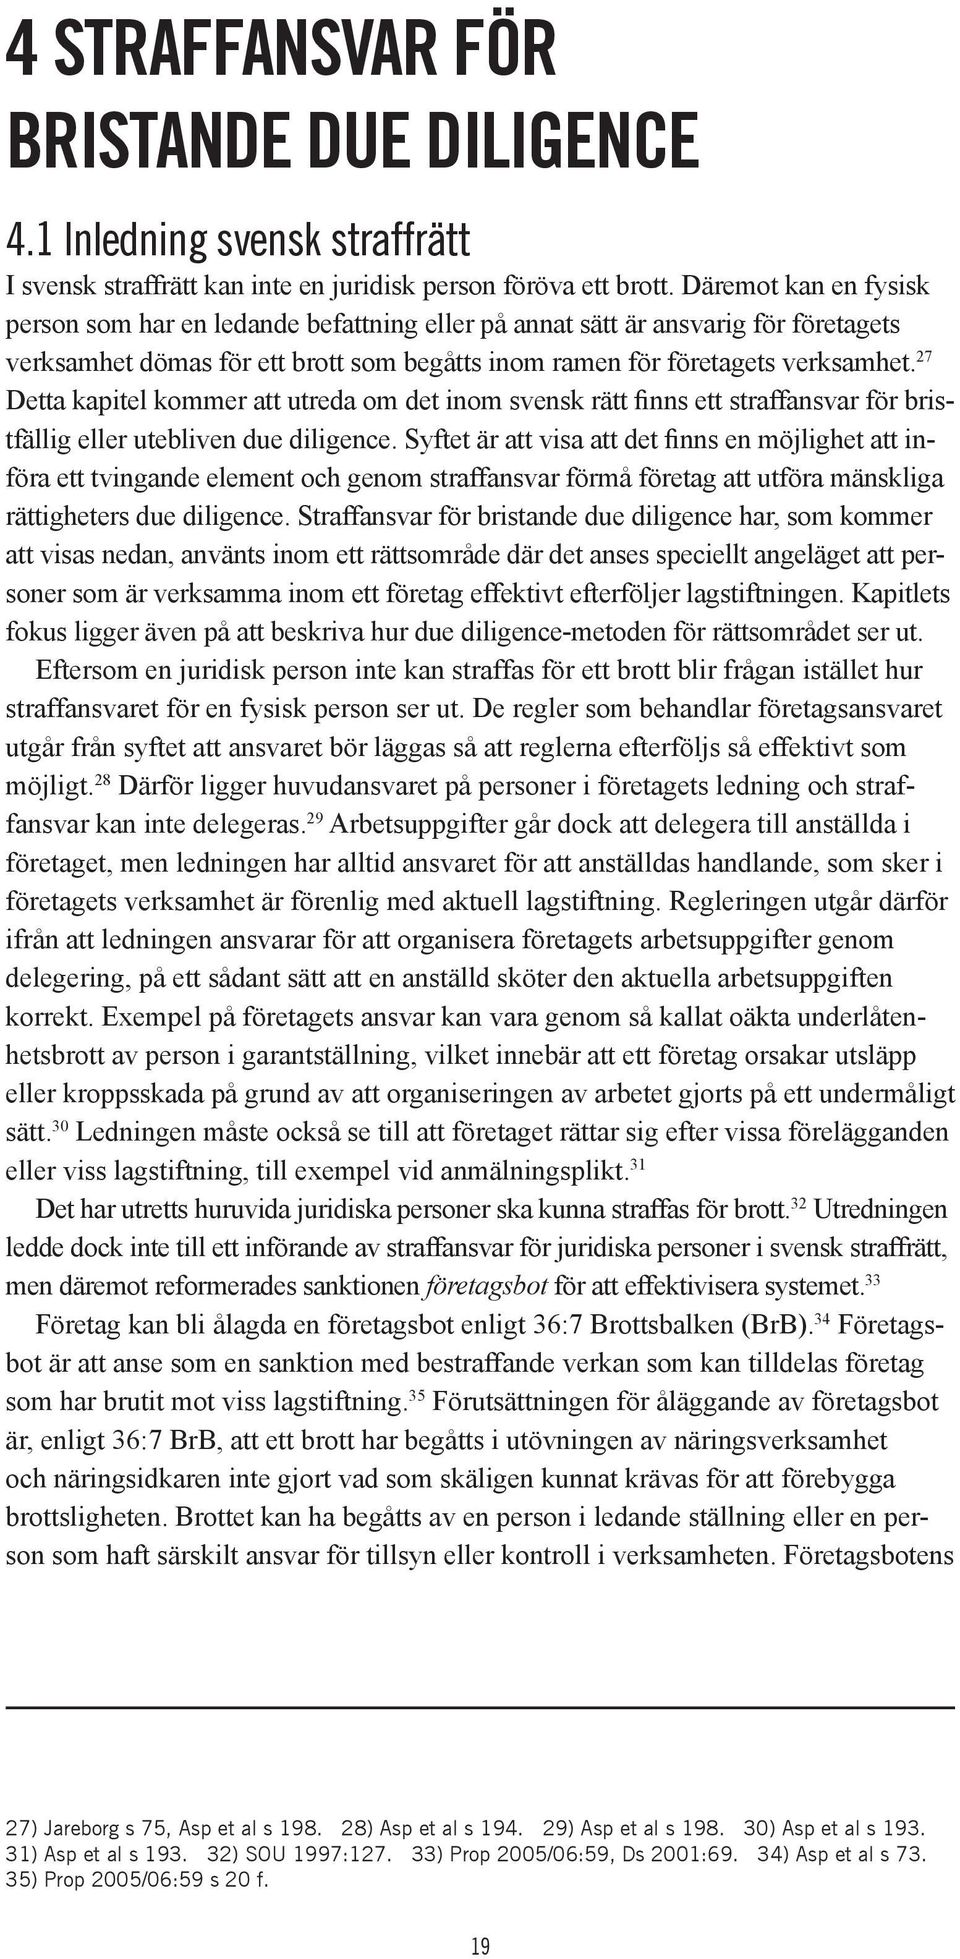 27 Detta kapitel kommer att utreda om det inom svensk rätt finns ett straffansvar för bristfällig eller utebliven due diligence.